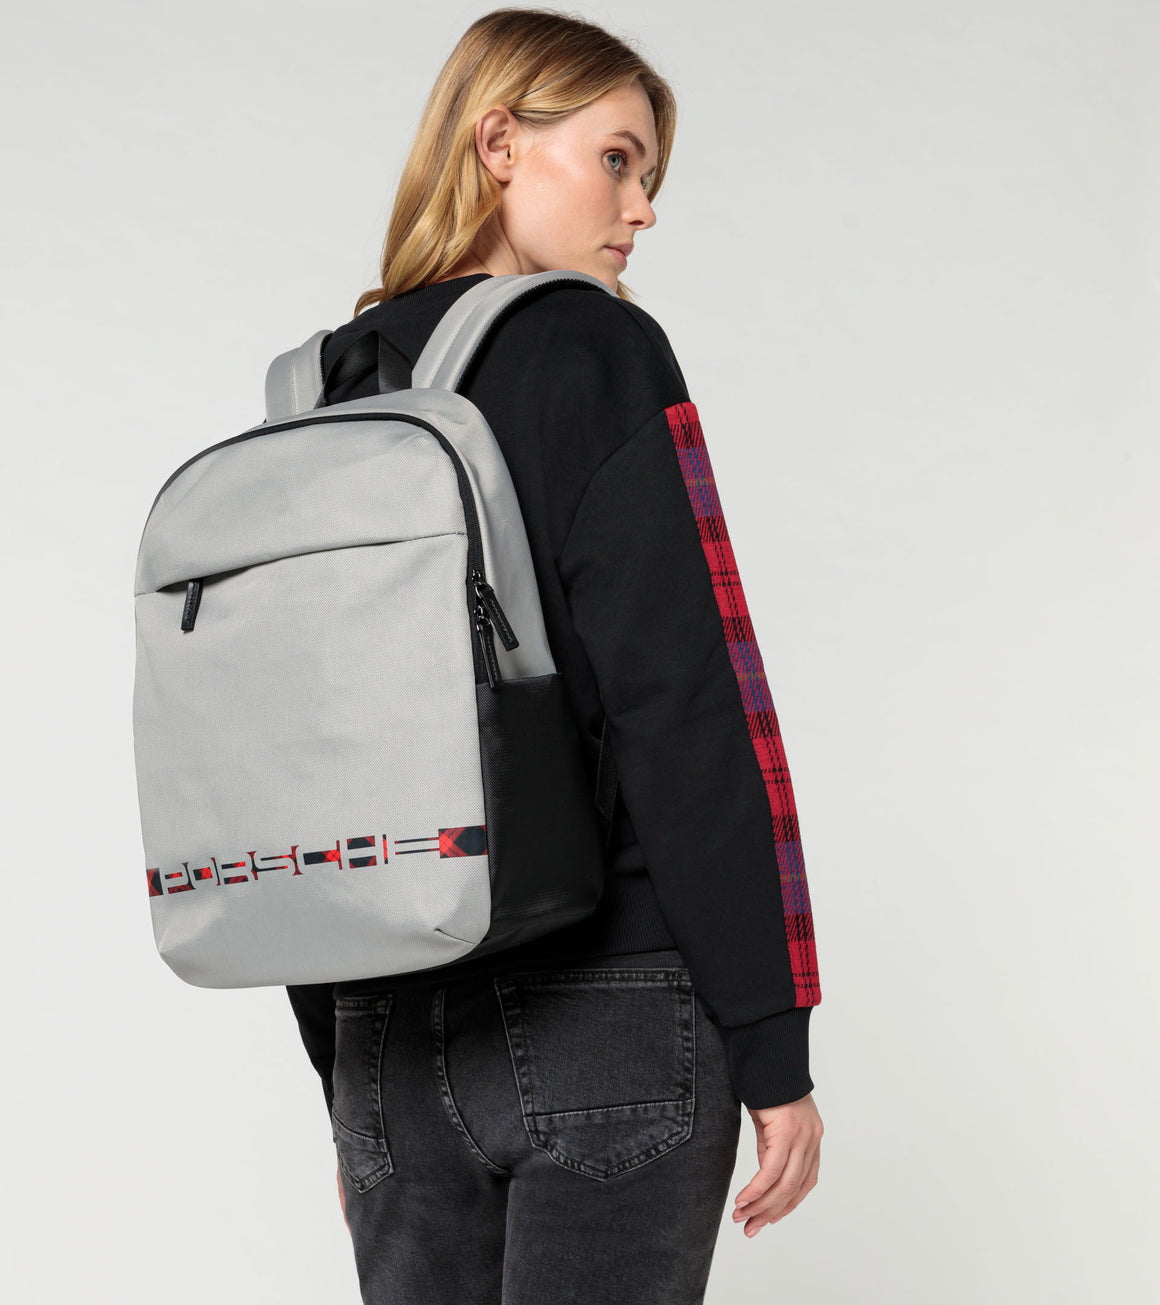 Turbo N°1 – Backpack